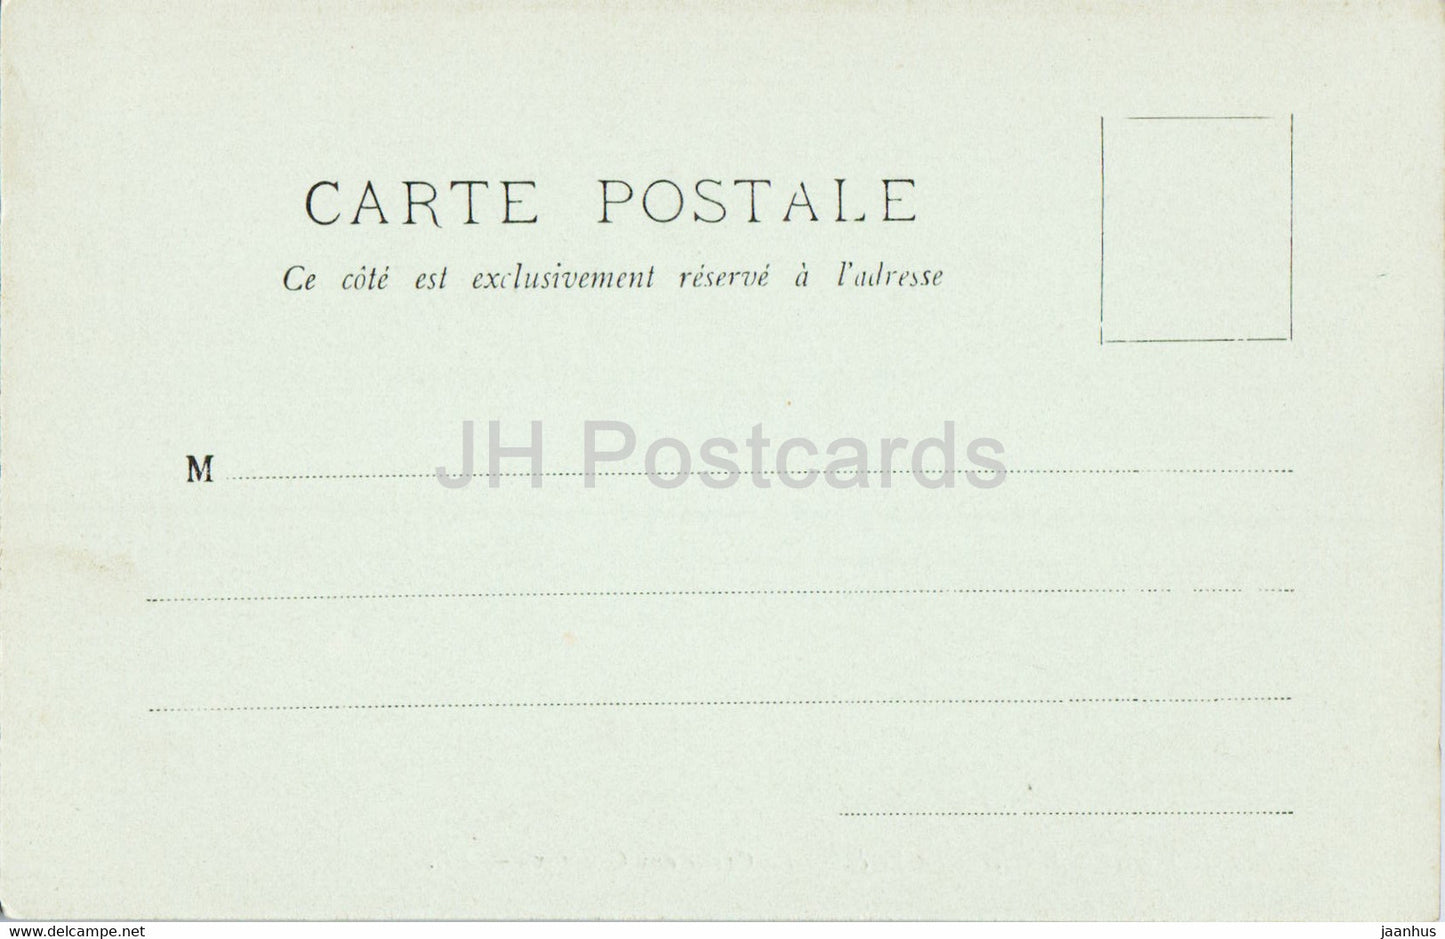 Fontainebleau - La Foret - La Grotte aux Cristaux - 124 - carte postale ancienne - France - inutilisée